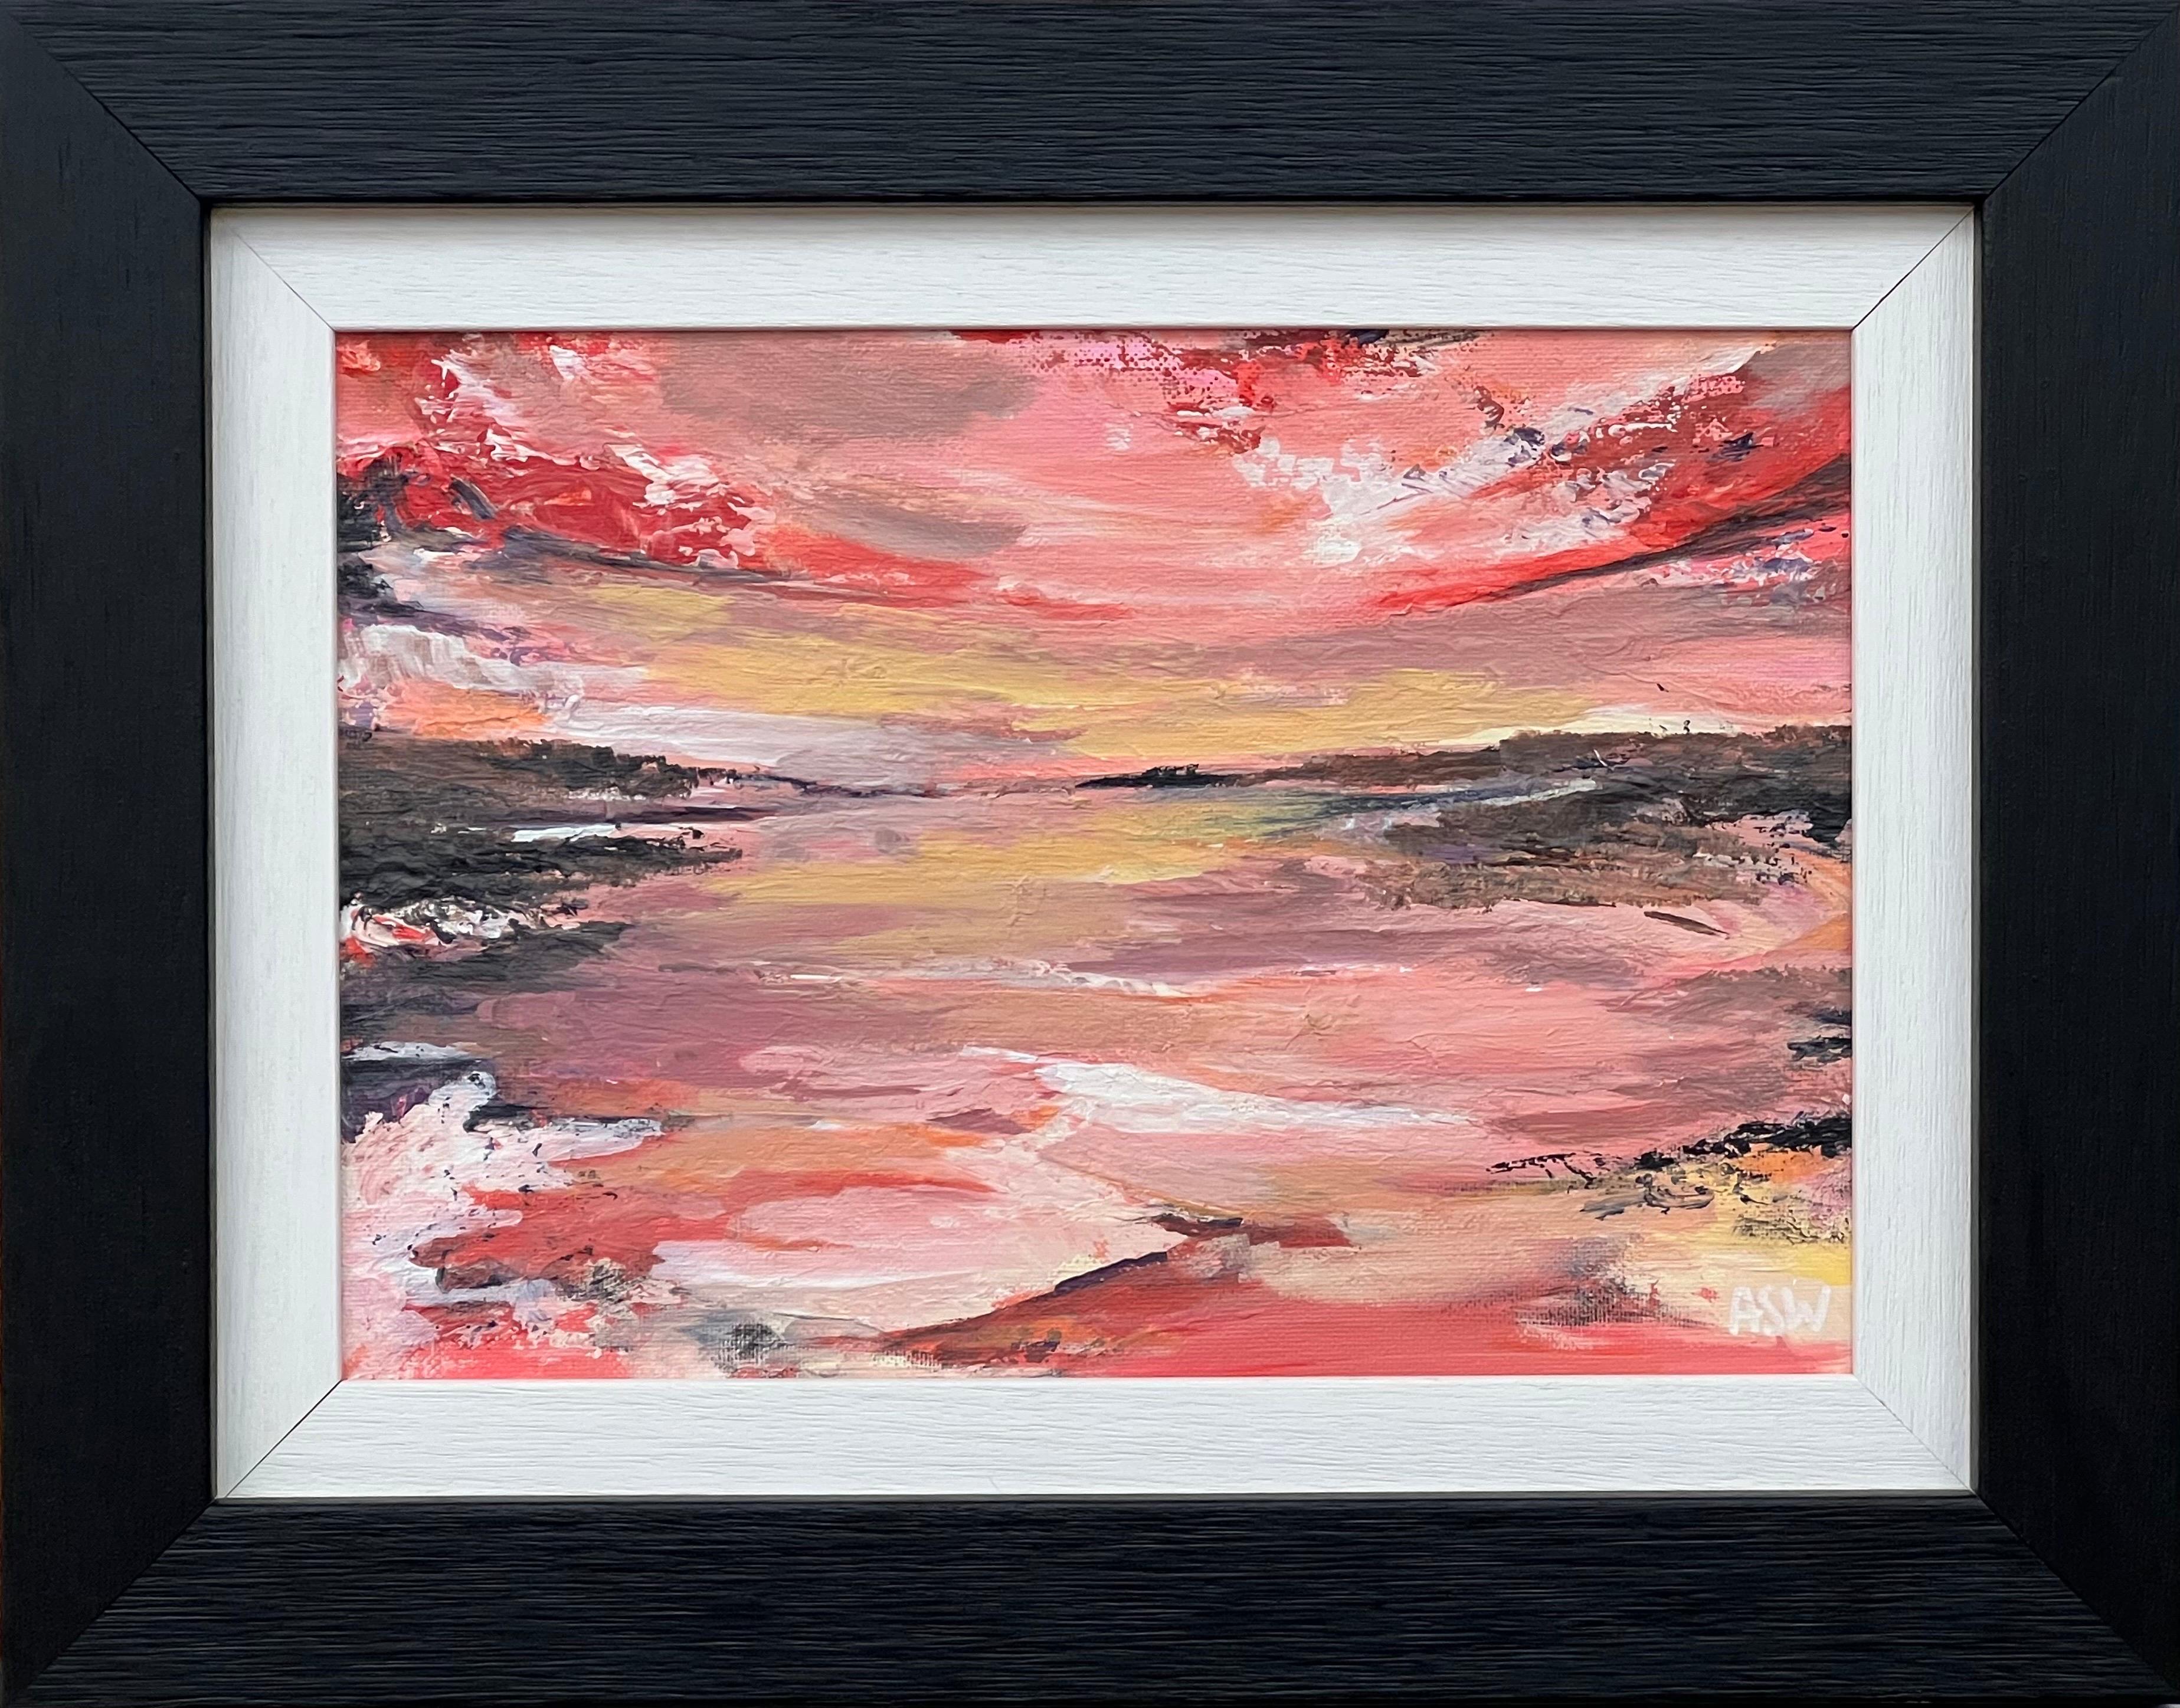 Landscape Painting Angela Wakefield - Impasto Abstract Landscape Seascape Painting with Pink Red Black & Golden Yellow (peinture abstraite de paysage marin avec rose, rouge, noir et jaune d'or)